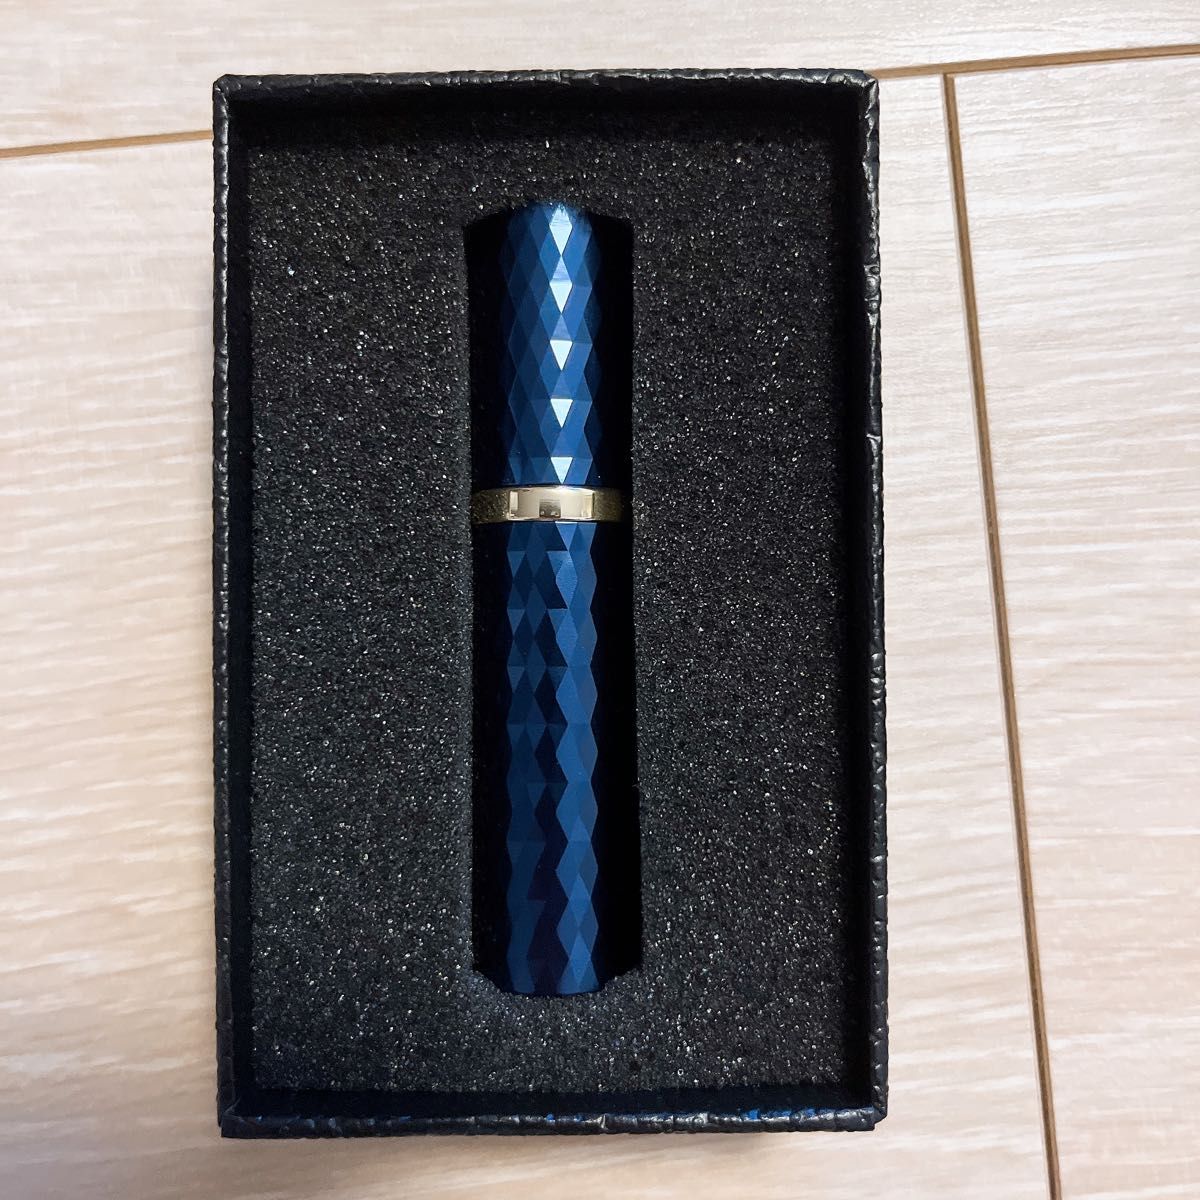 詰め替え可能 香水 噴霧器 携帯用 空 スプレーボトル ミニ ポケットサイズ 旅行香水 ディスペンサー 5ml (ブルー)